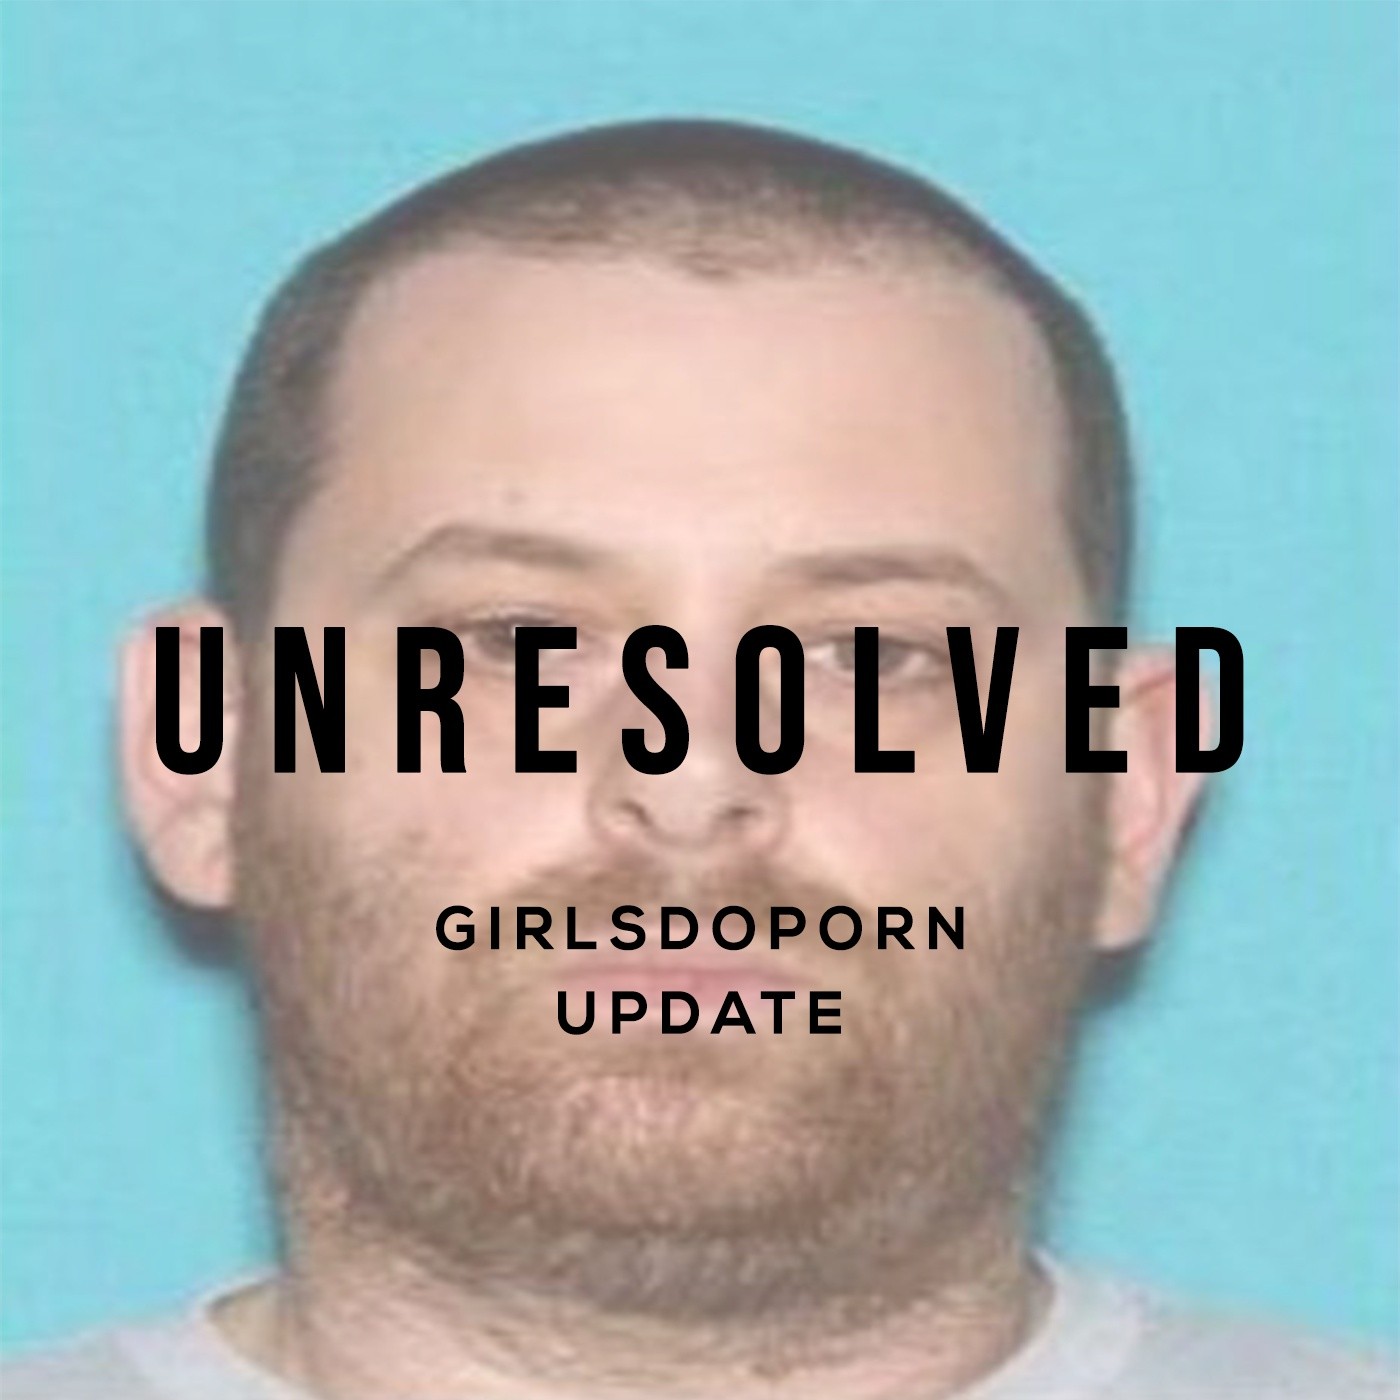 Girlsdoporn Update — Unresolved